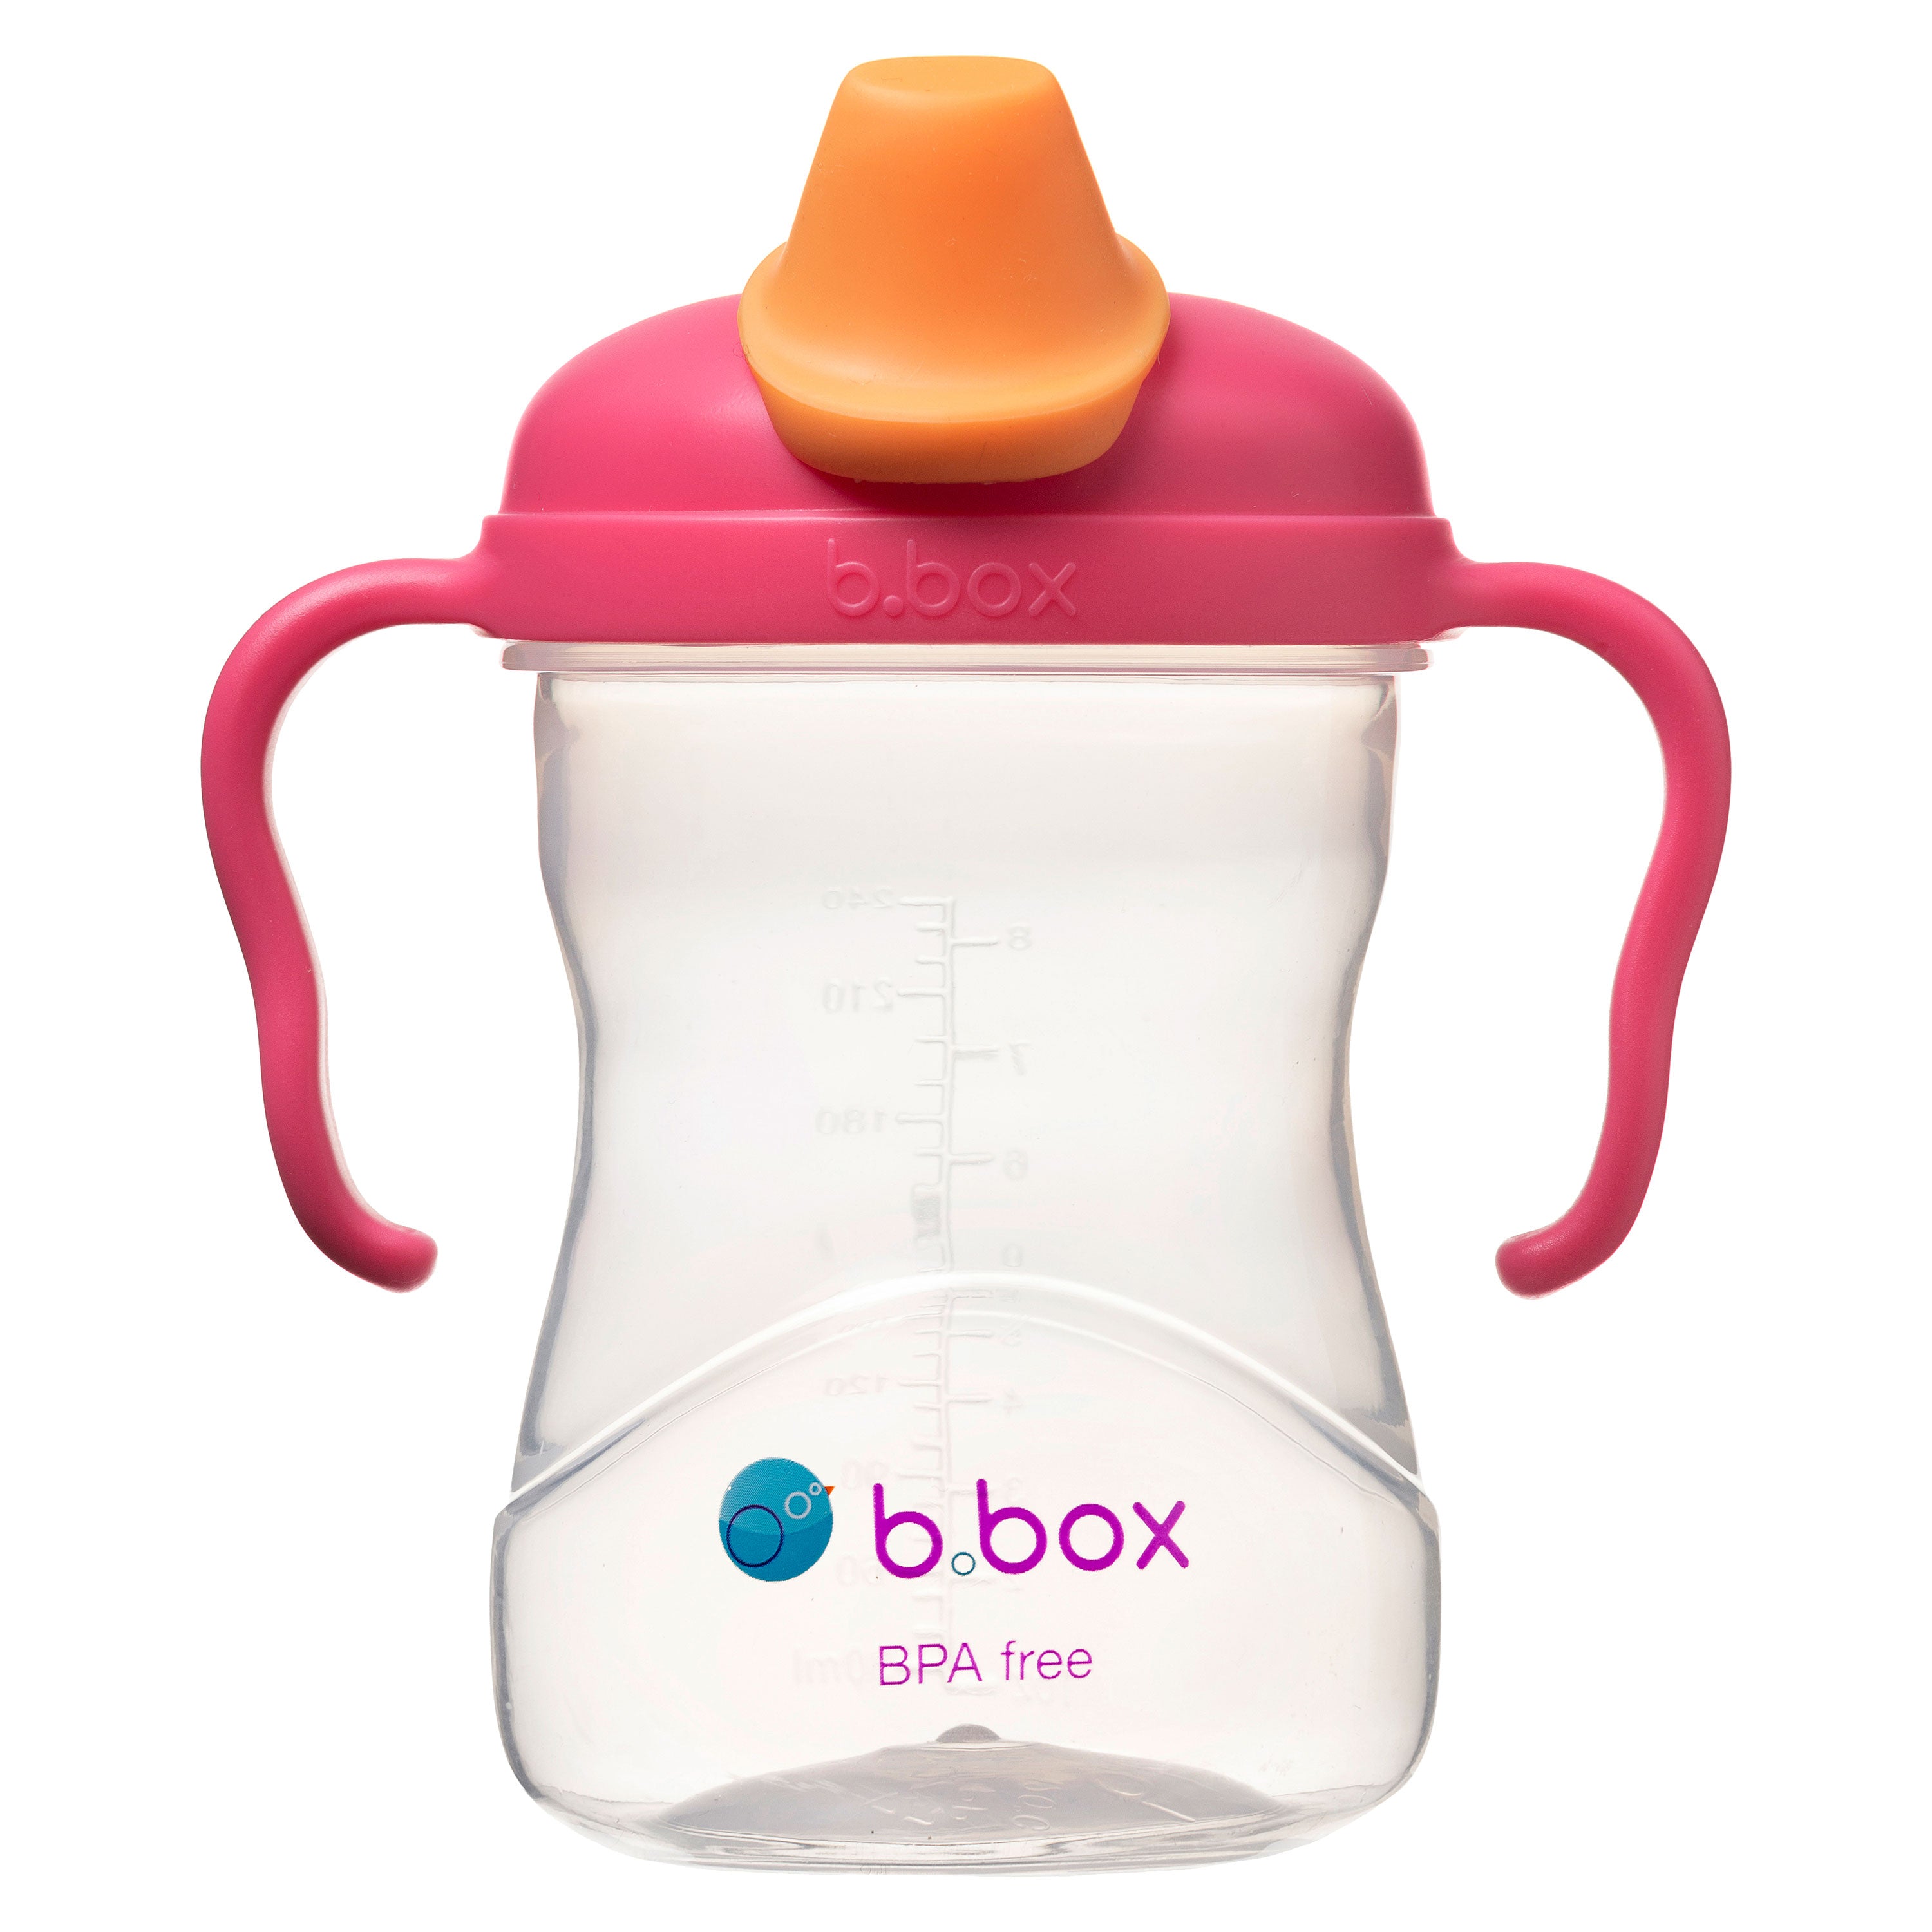 B.Box Soft Spout Cup 240ml- Raspberry Pink Orange